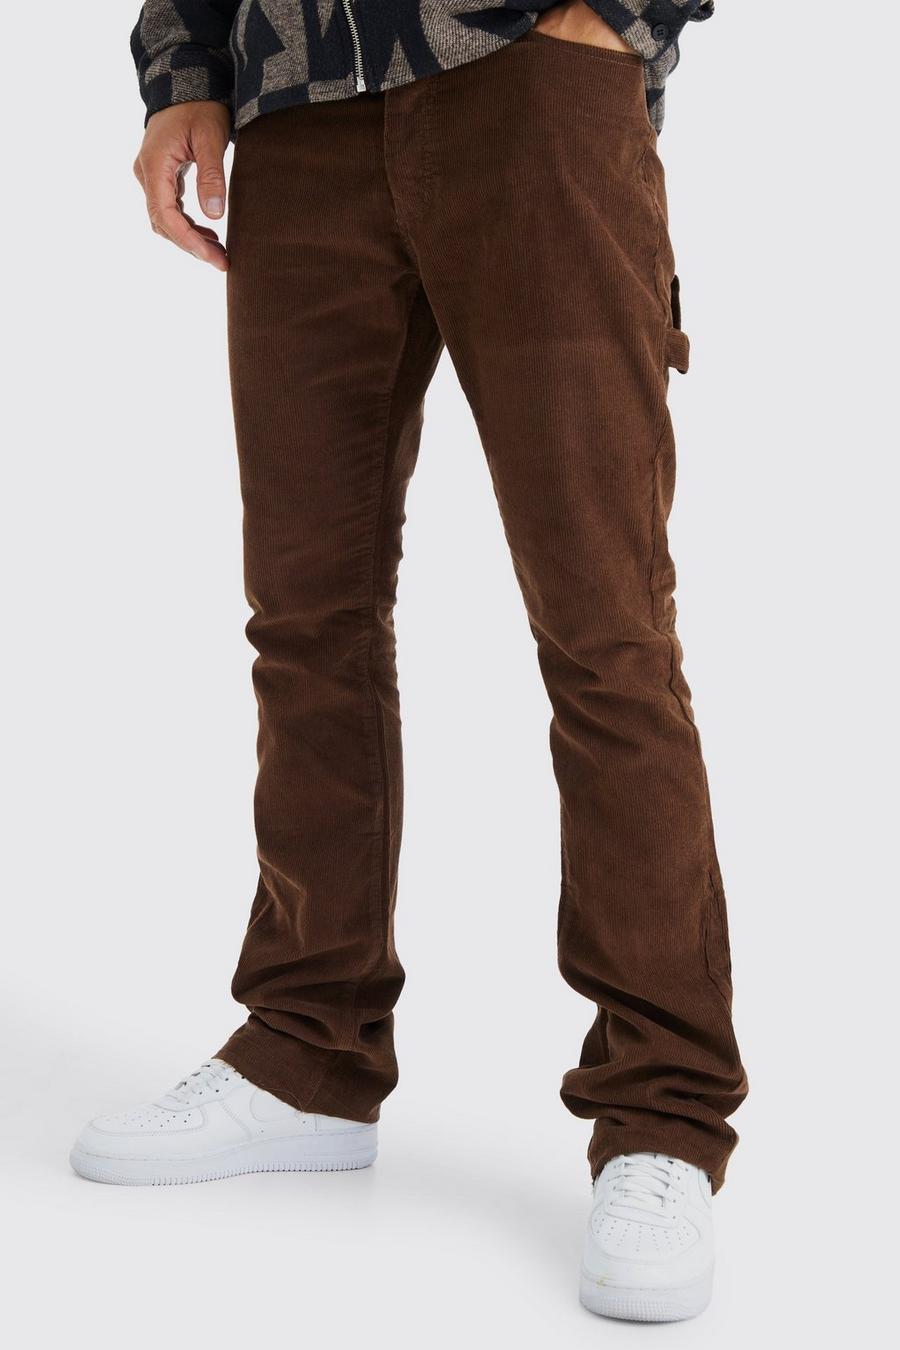 Pantaloni a zampa Tall Slim Fit in velluto a coste con dettagli stile Carpenter, Chocolate